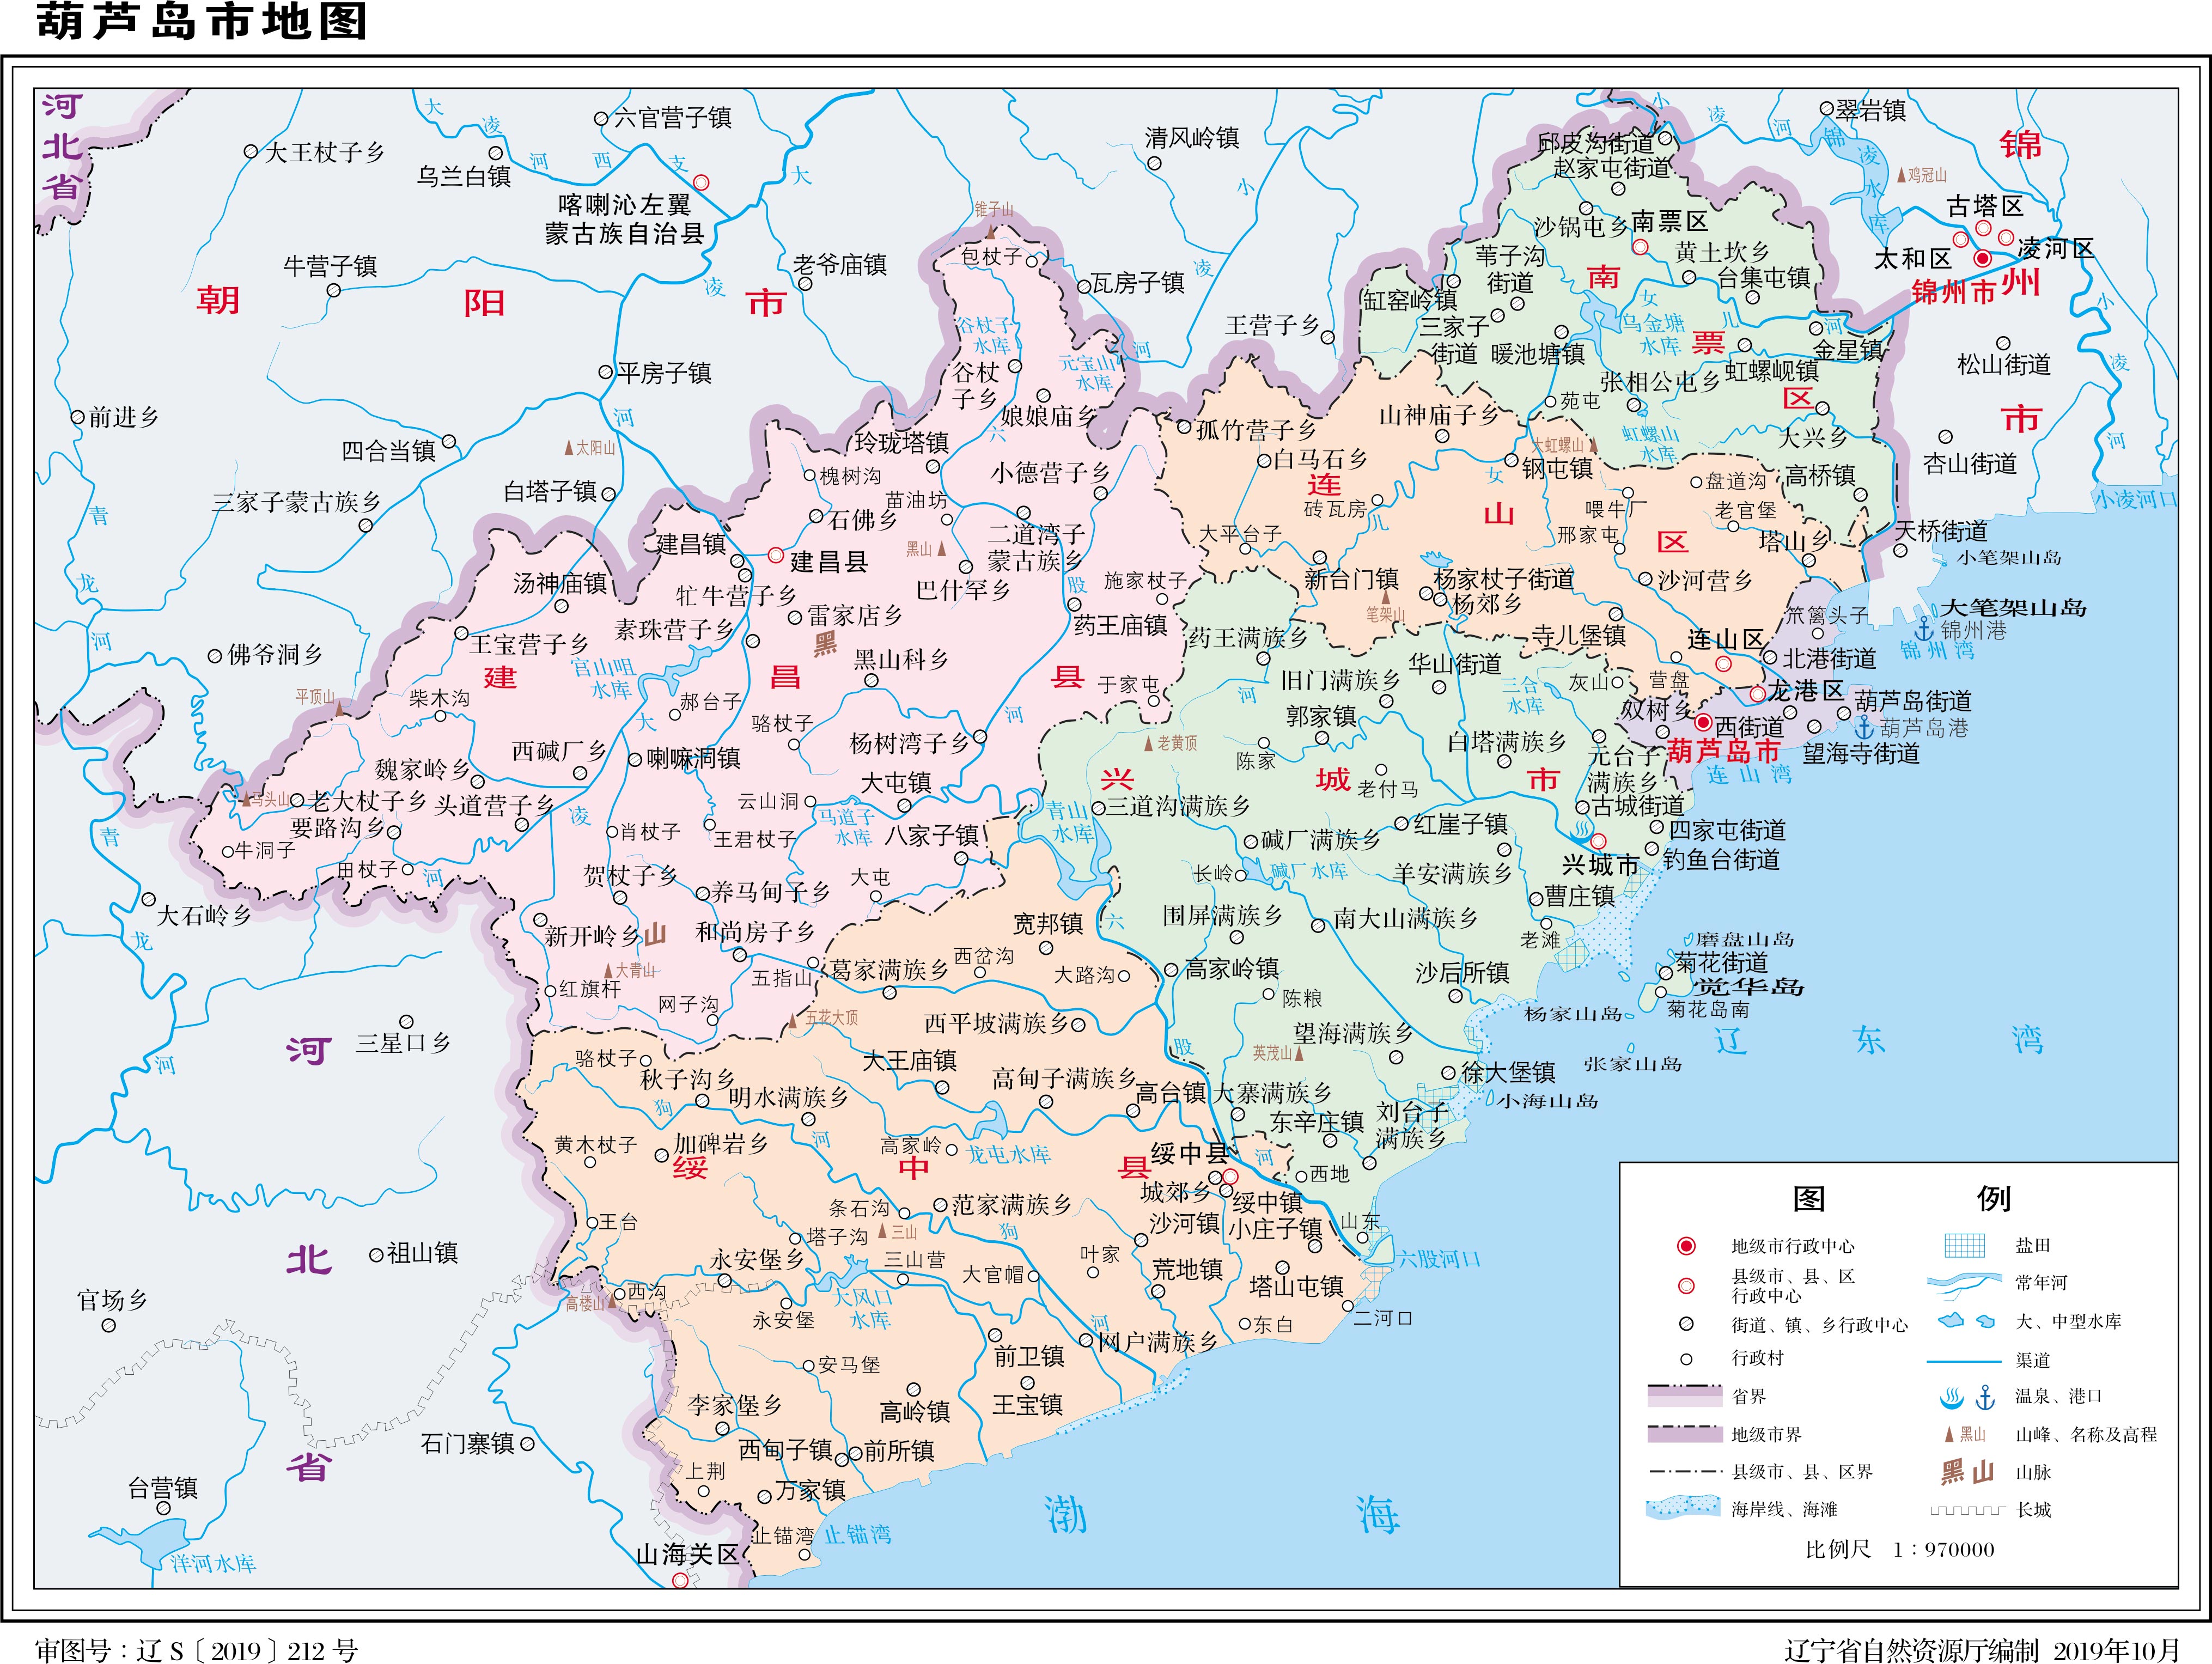 地图库 地图 辽宁 葫芦岛  葫芦岛市标准地图    分国地图 | 分